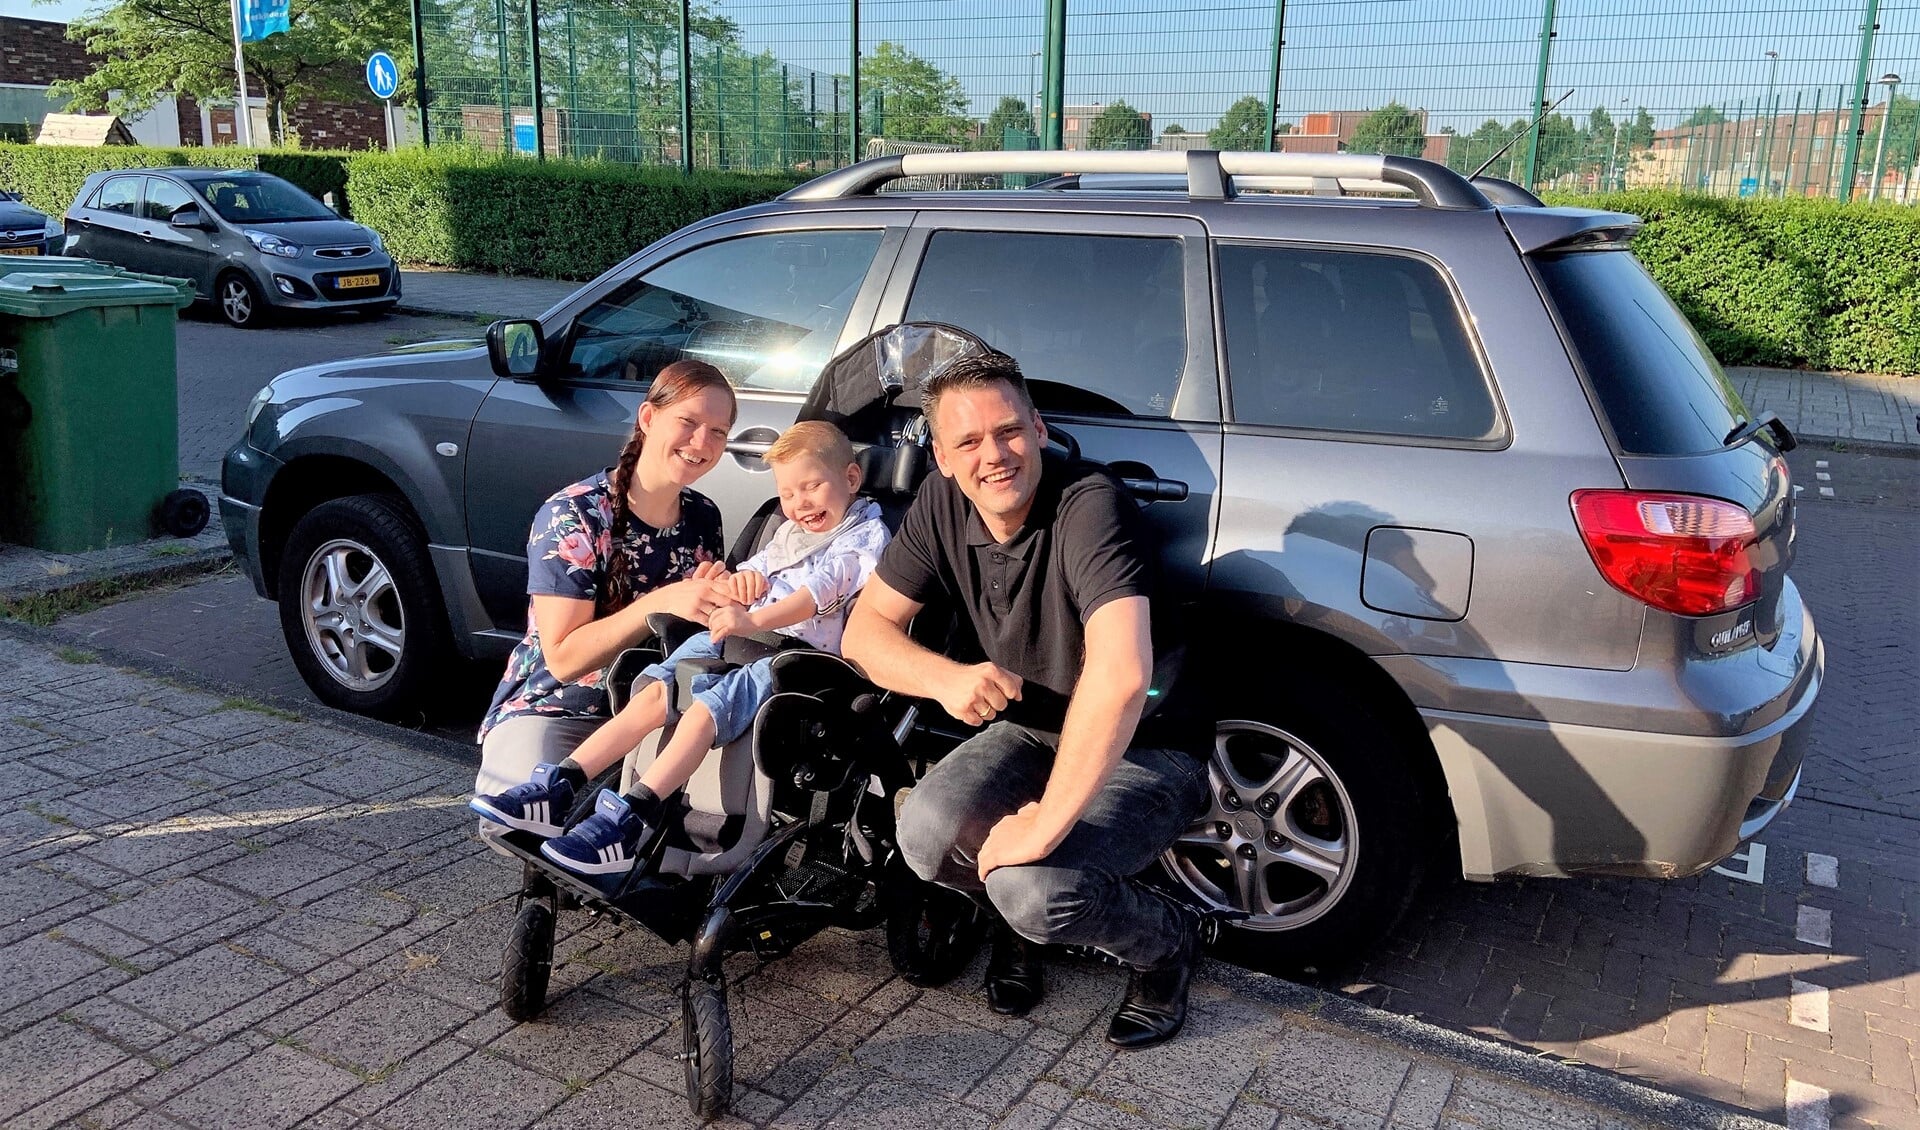 Sjors met papa en mama bij de auto die eigenlijk te klein is om zijn elektrische rolstoel in te kunnen vervoeren (familiefoto).